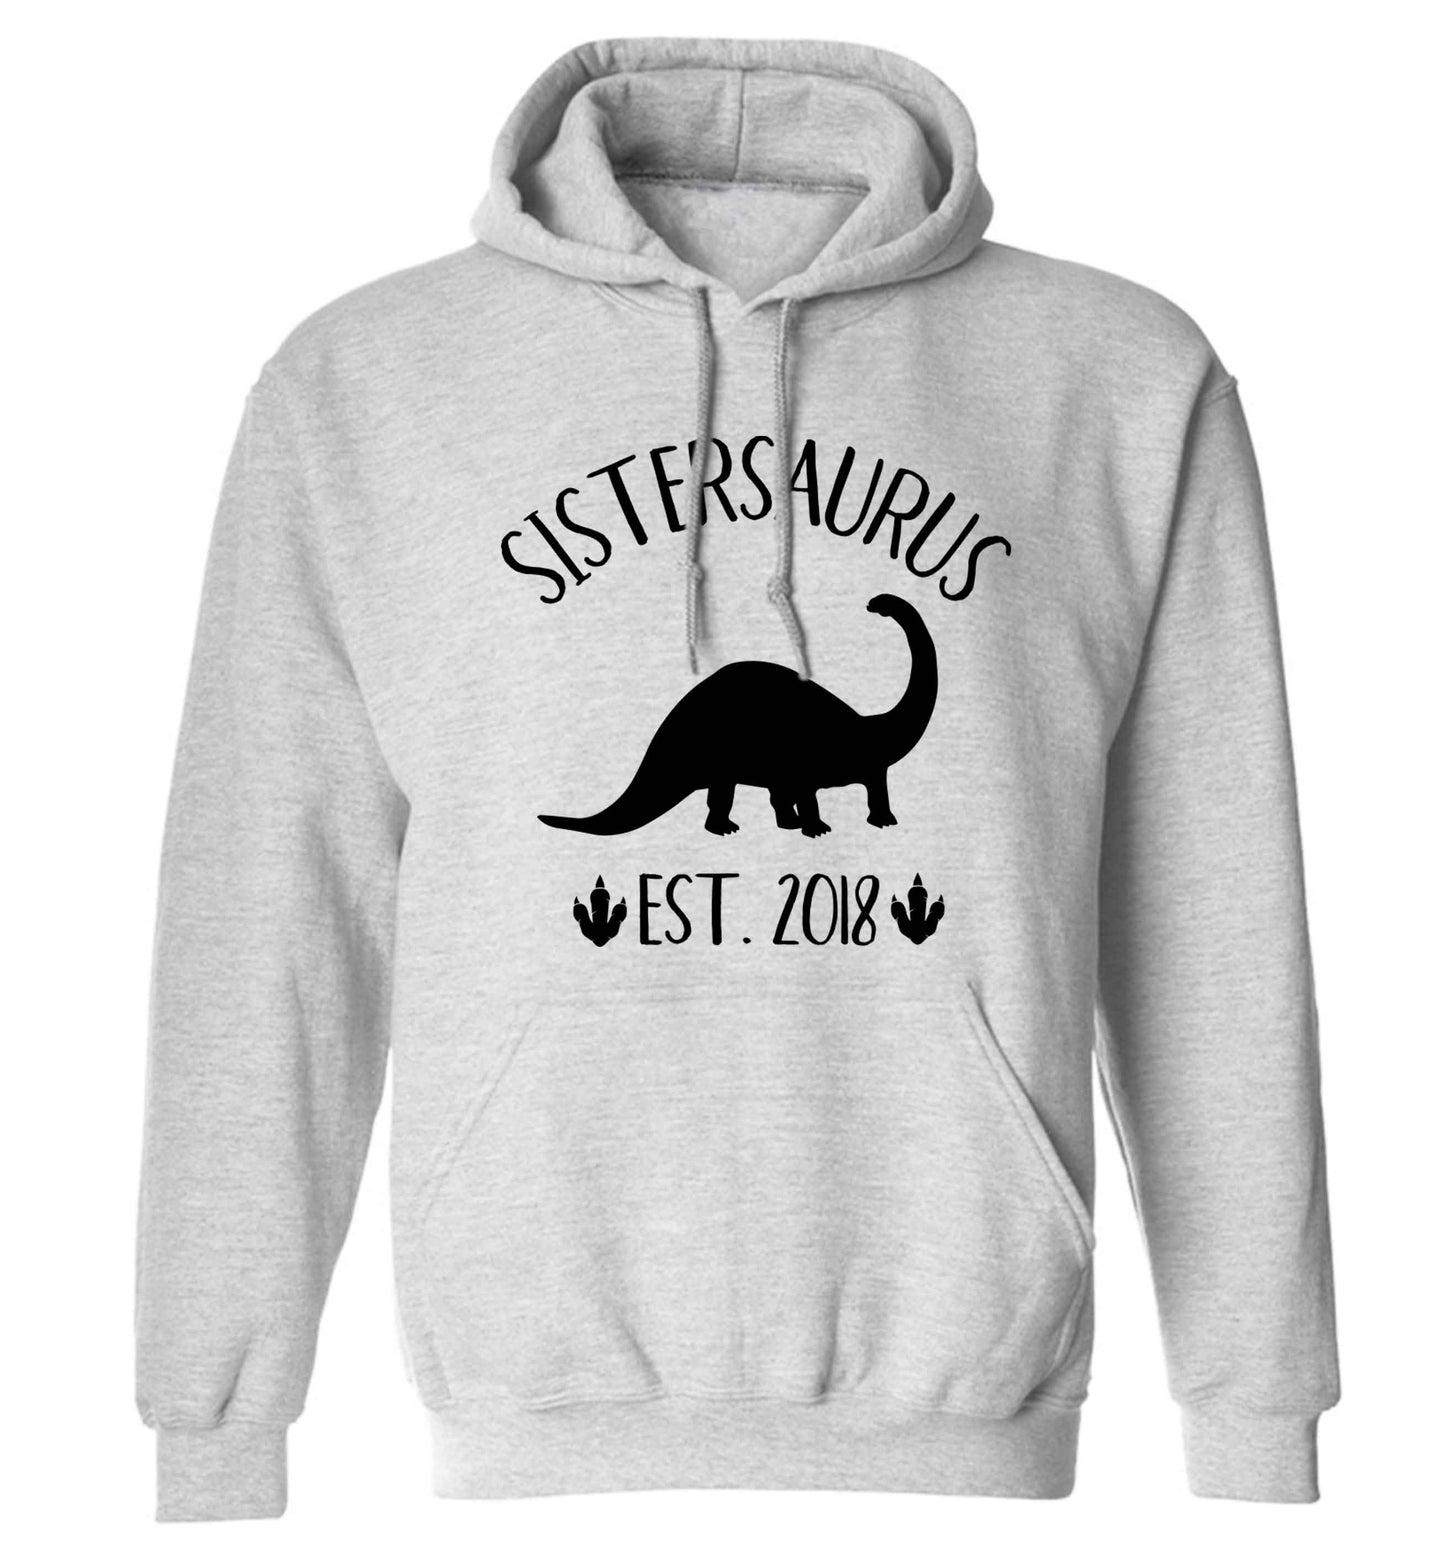 Personalised sistersaurus since (custom date) adults unisex grey hoodie 2XL